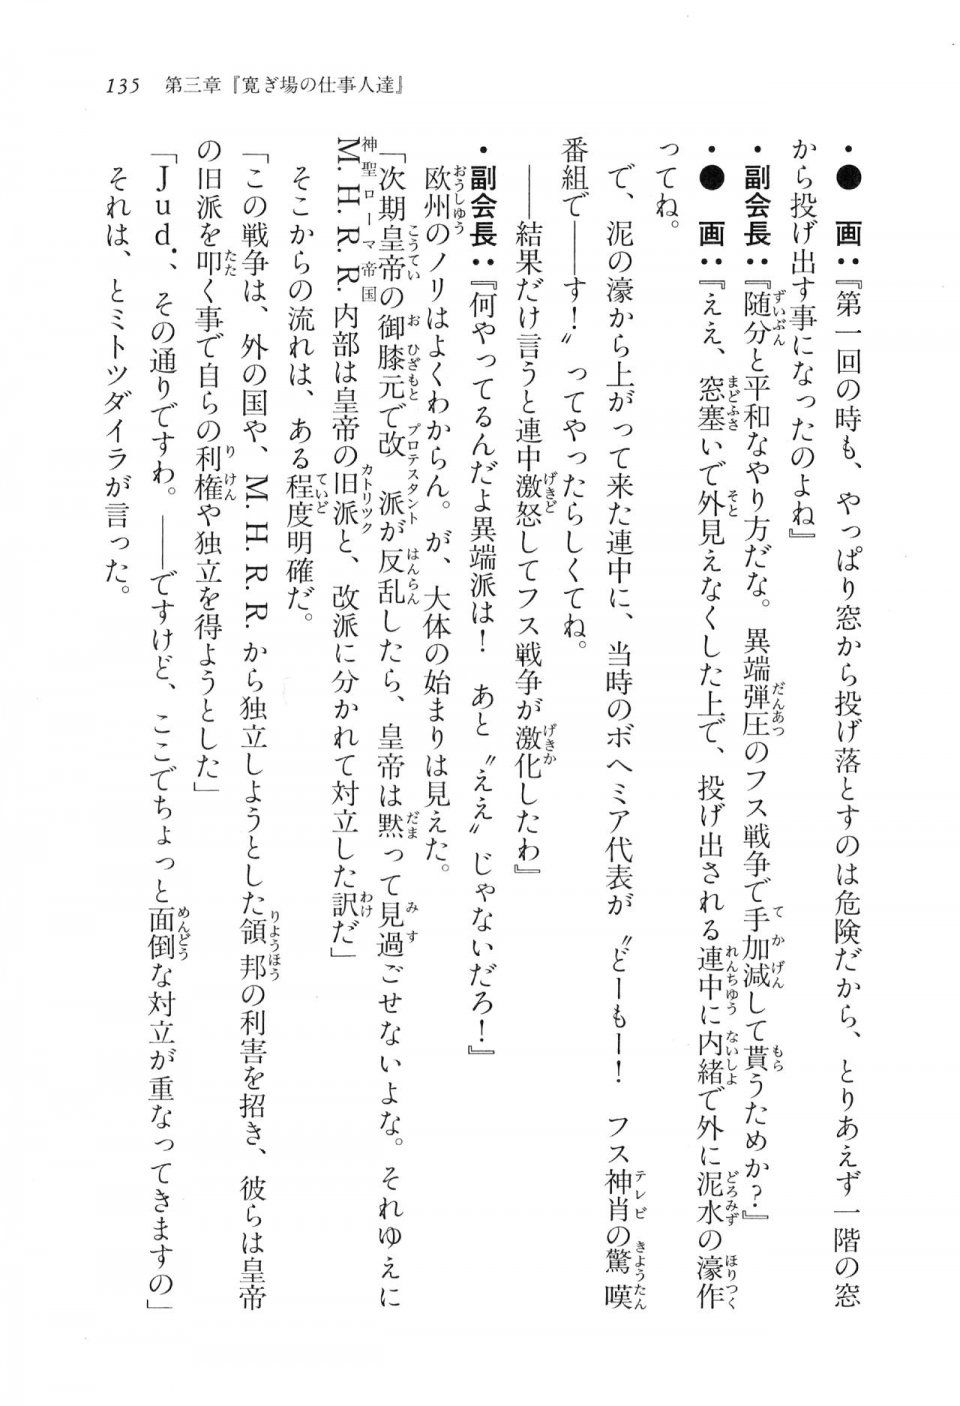 Kyoukai Senjou no Horizon LN Vol 16(7A) - Photo #135